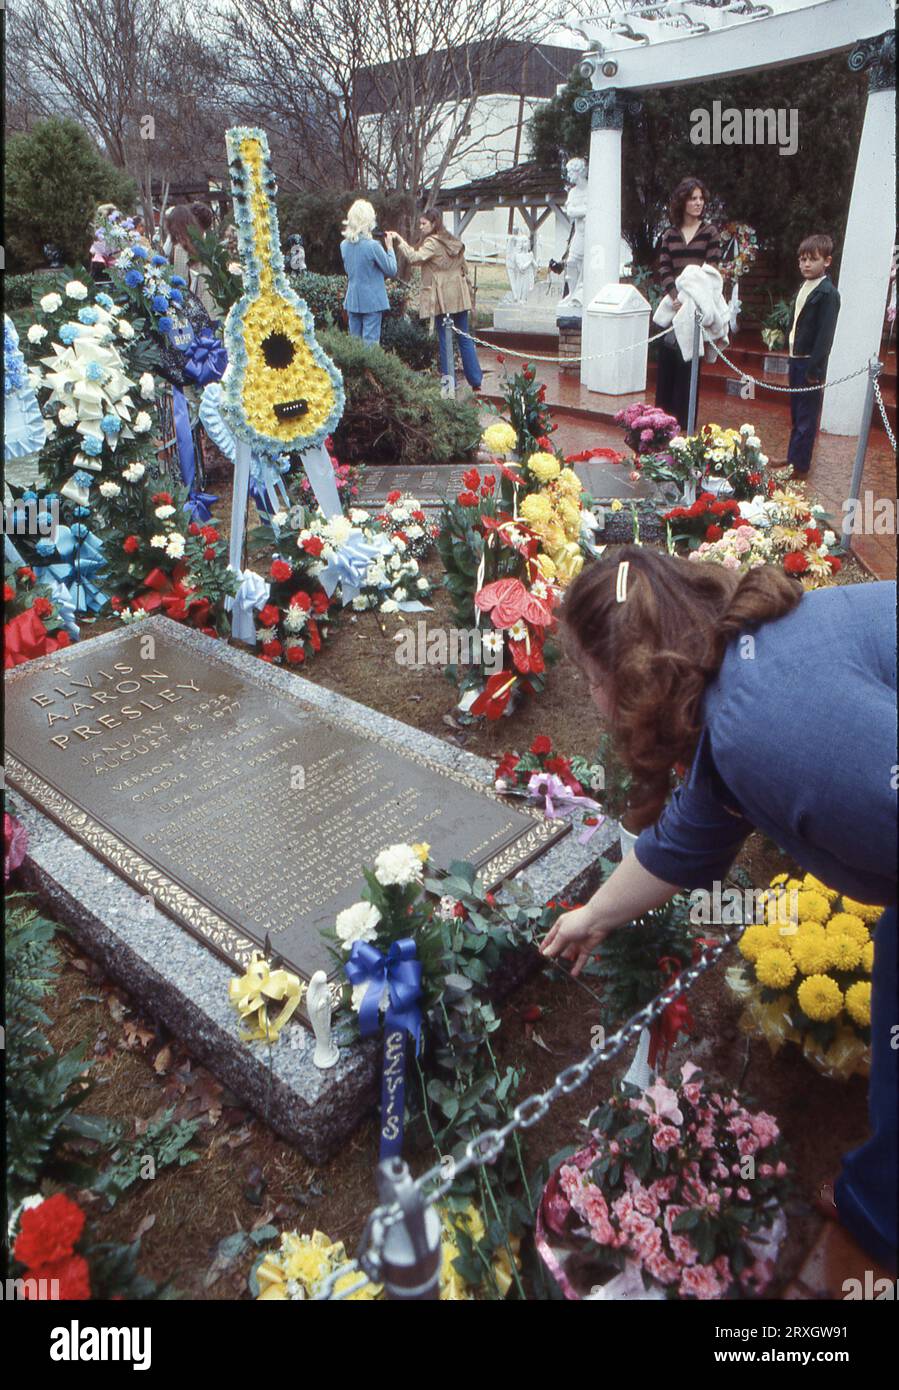 Al primo compleanno di Elvis dopo la sua morte, una donna mette un fiore sulla sua lapide. A Graceland, residenza di Elvis a Memphis, l'8 gennaio 1978 in un giorno di drizzly. Foto Stock